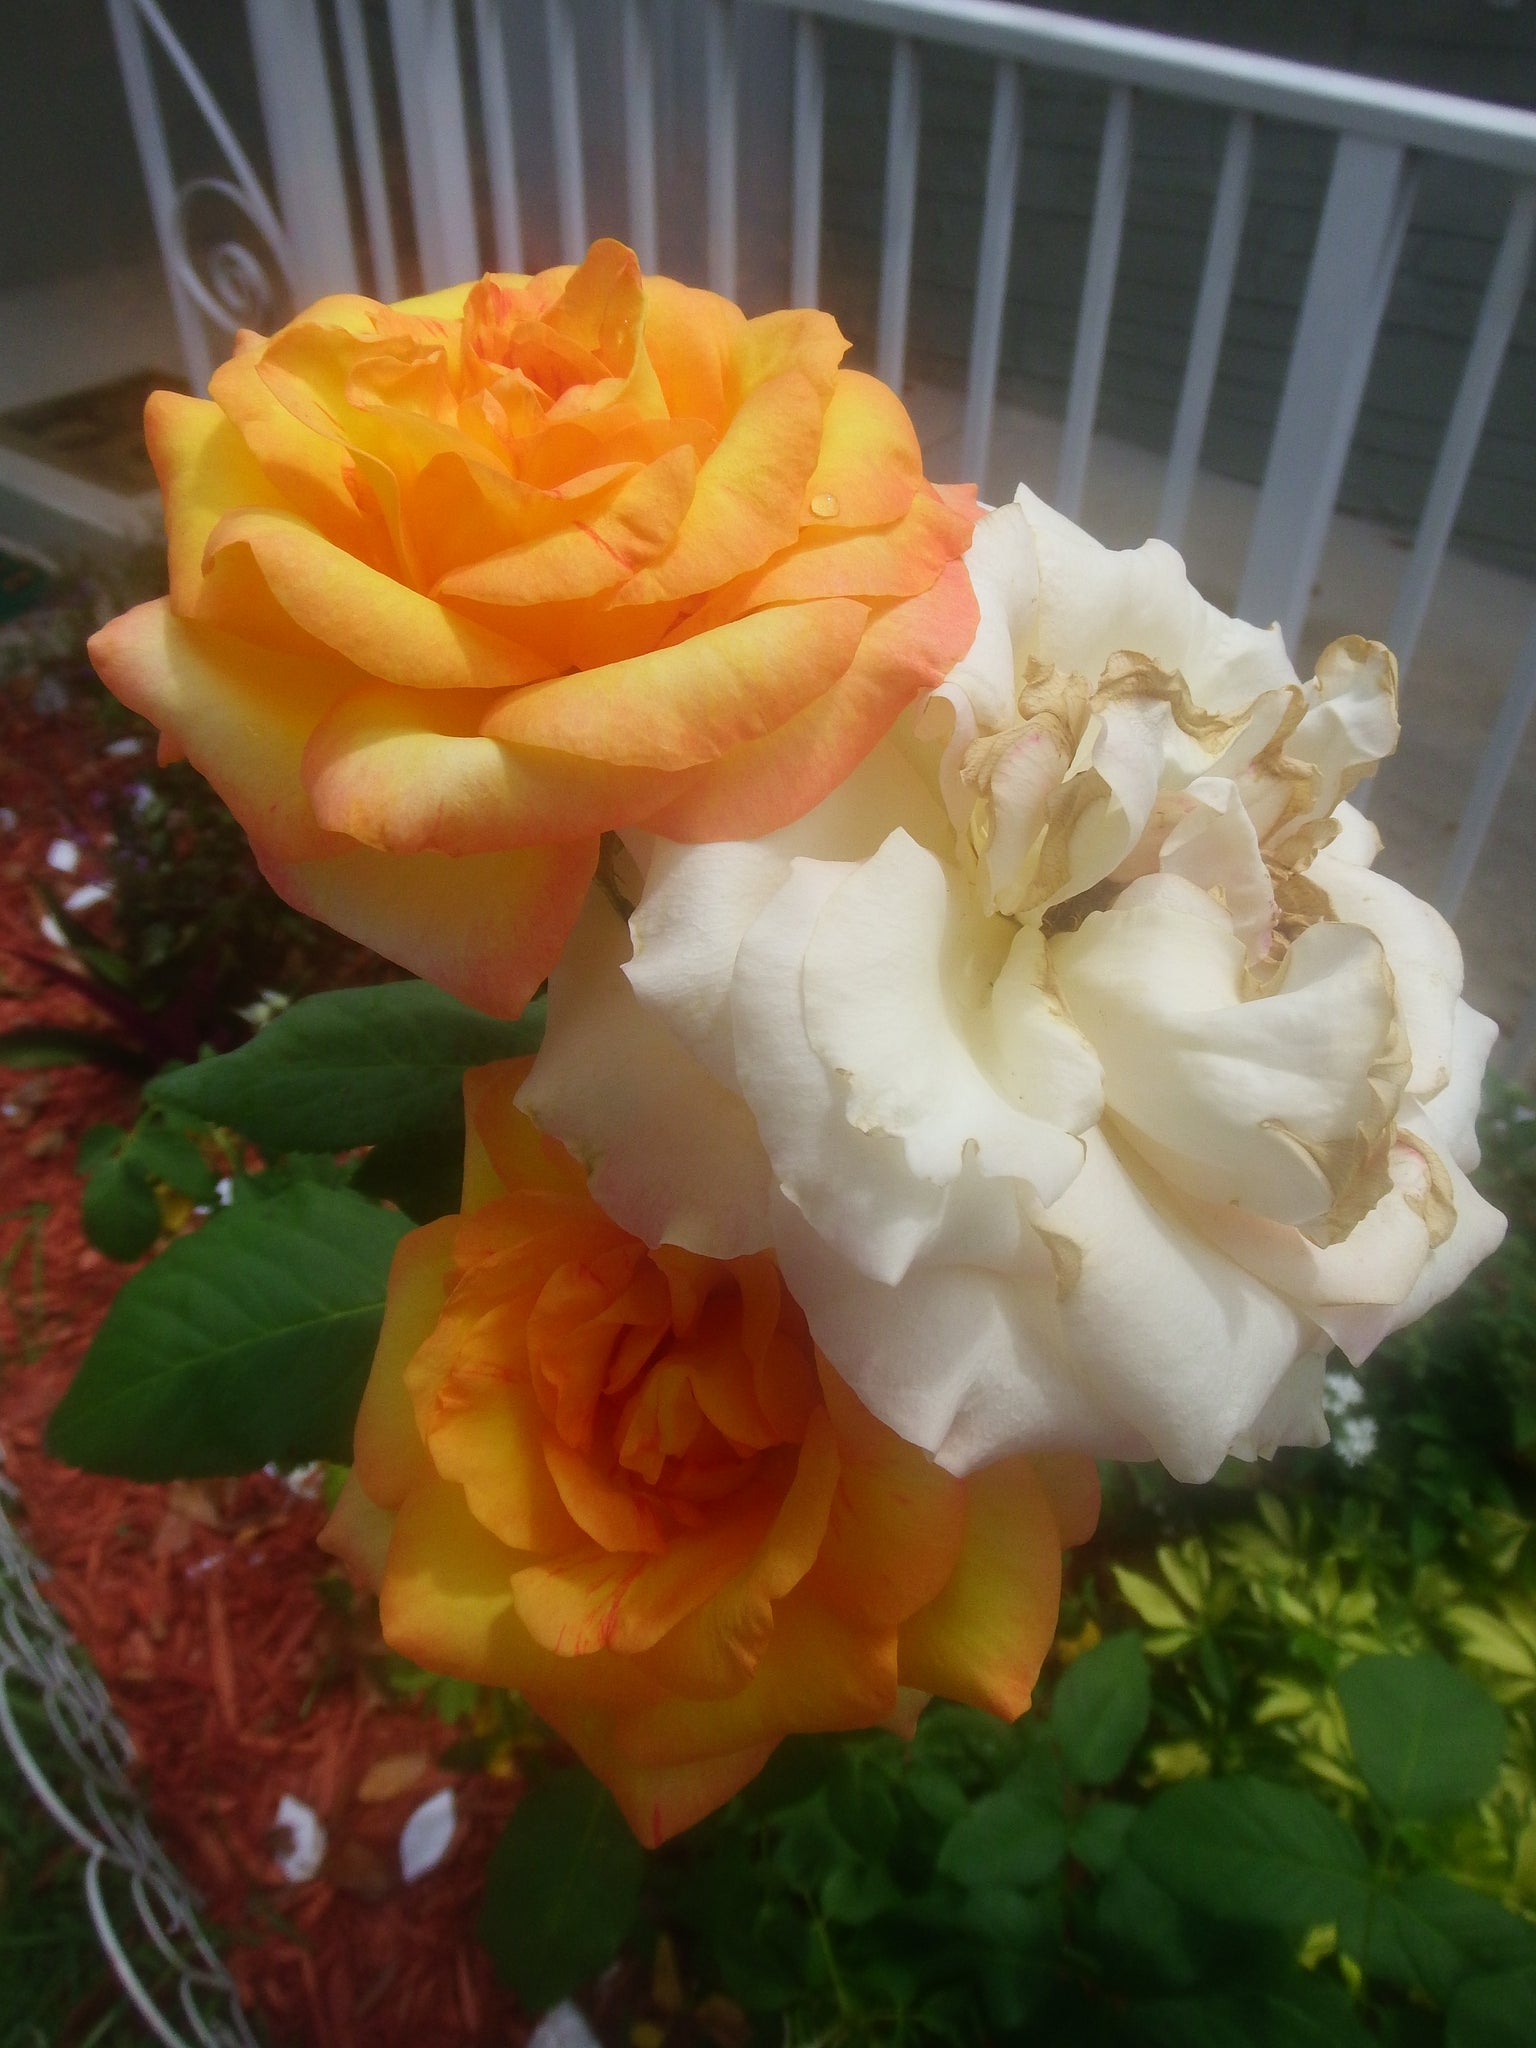 gardening,yellow rose,photo